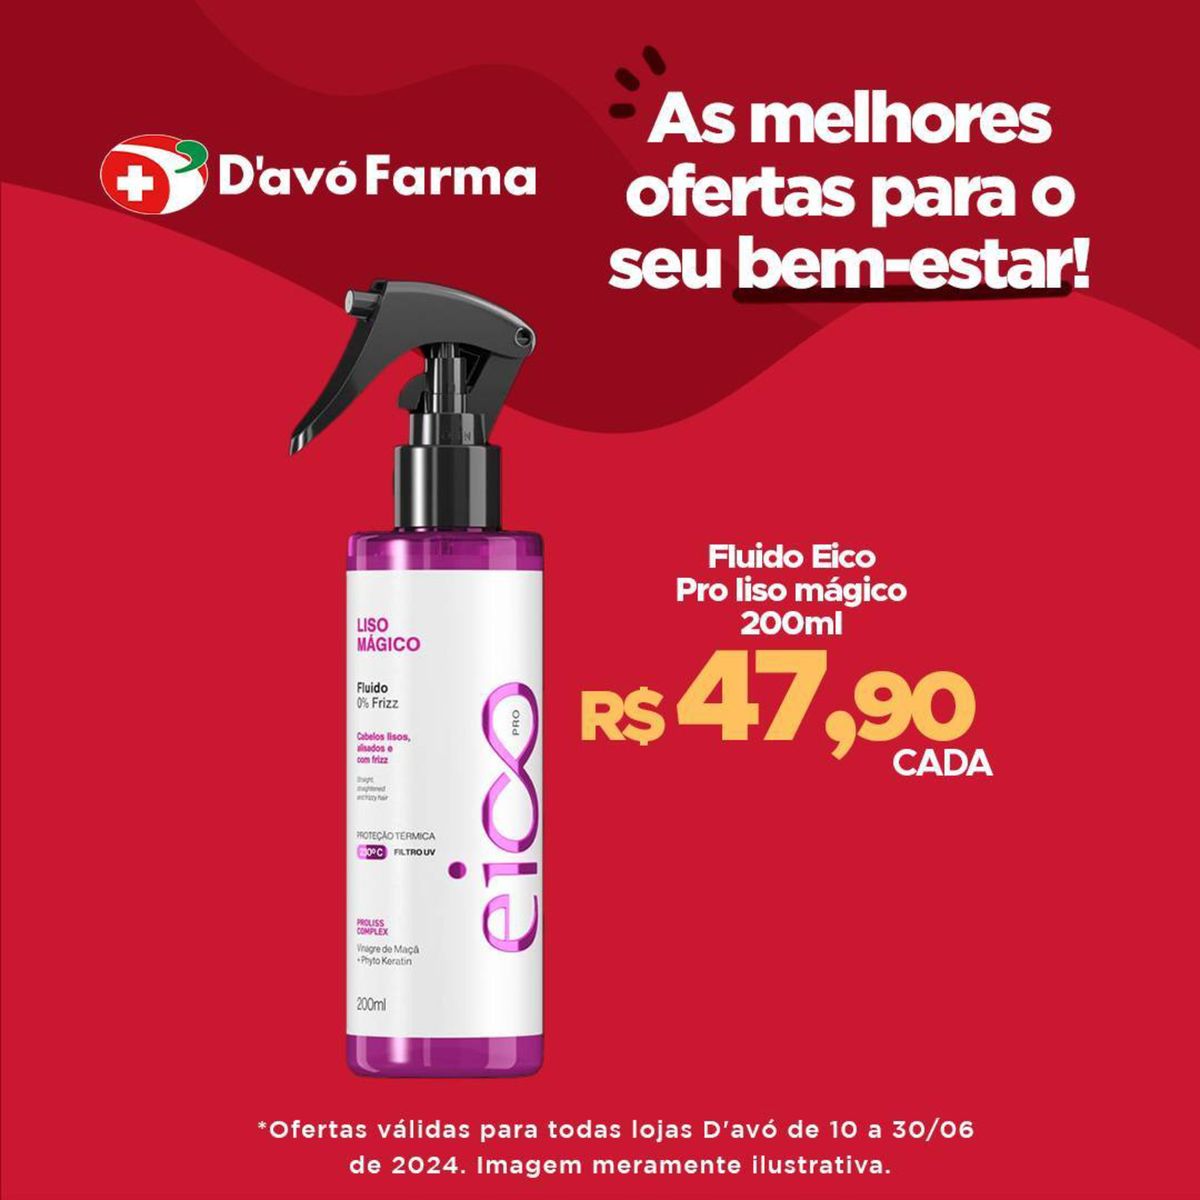 Promoção Fluido Eico Pro liso mágico 200ml por apenas R$ 47,90!